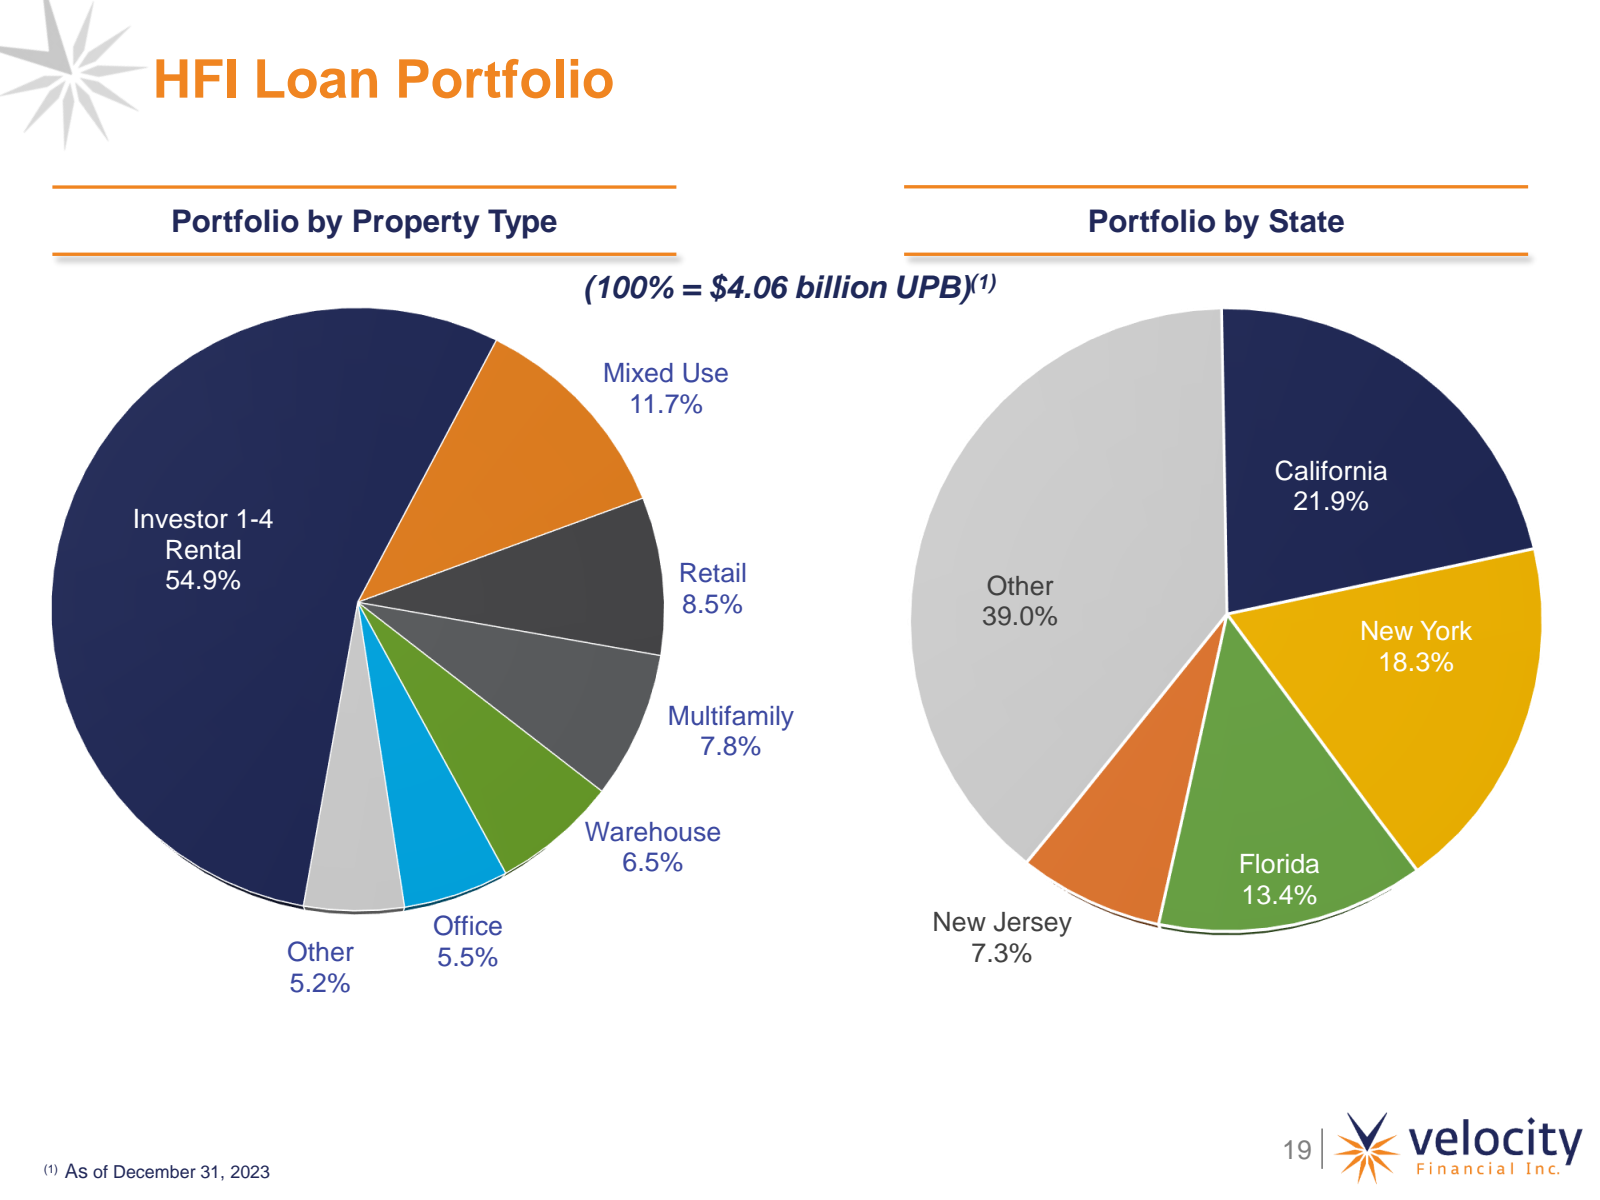 HFI Loan Portfolio 
